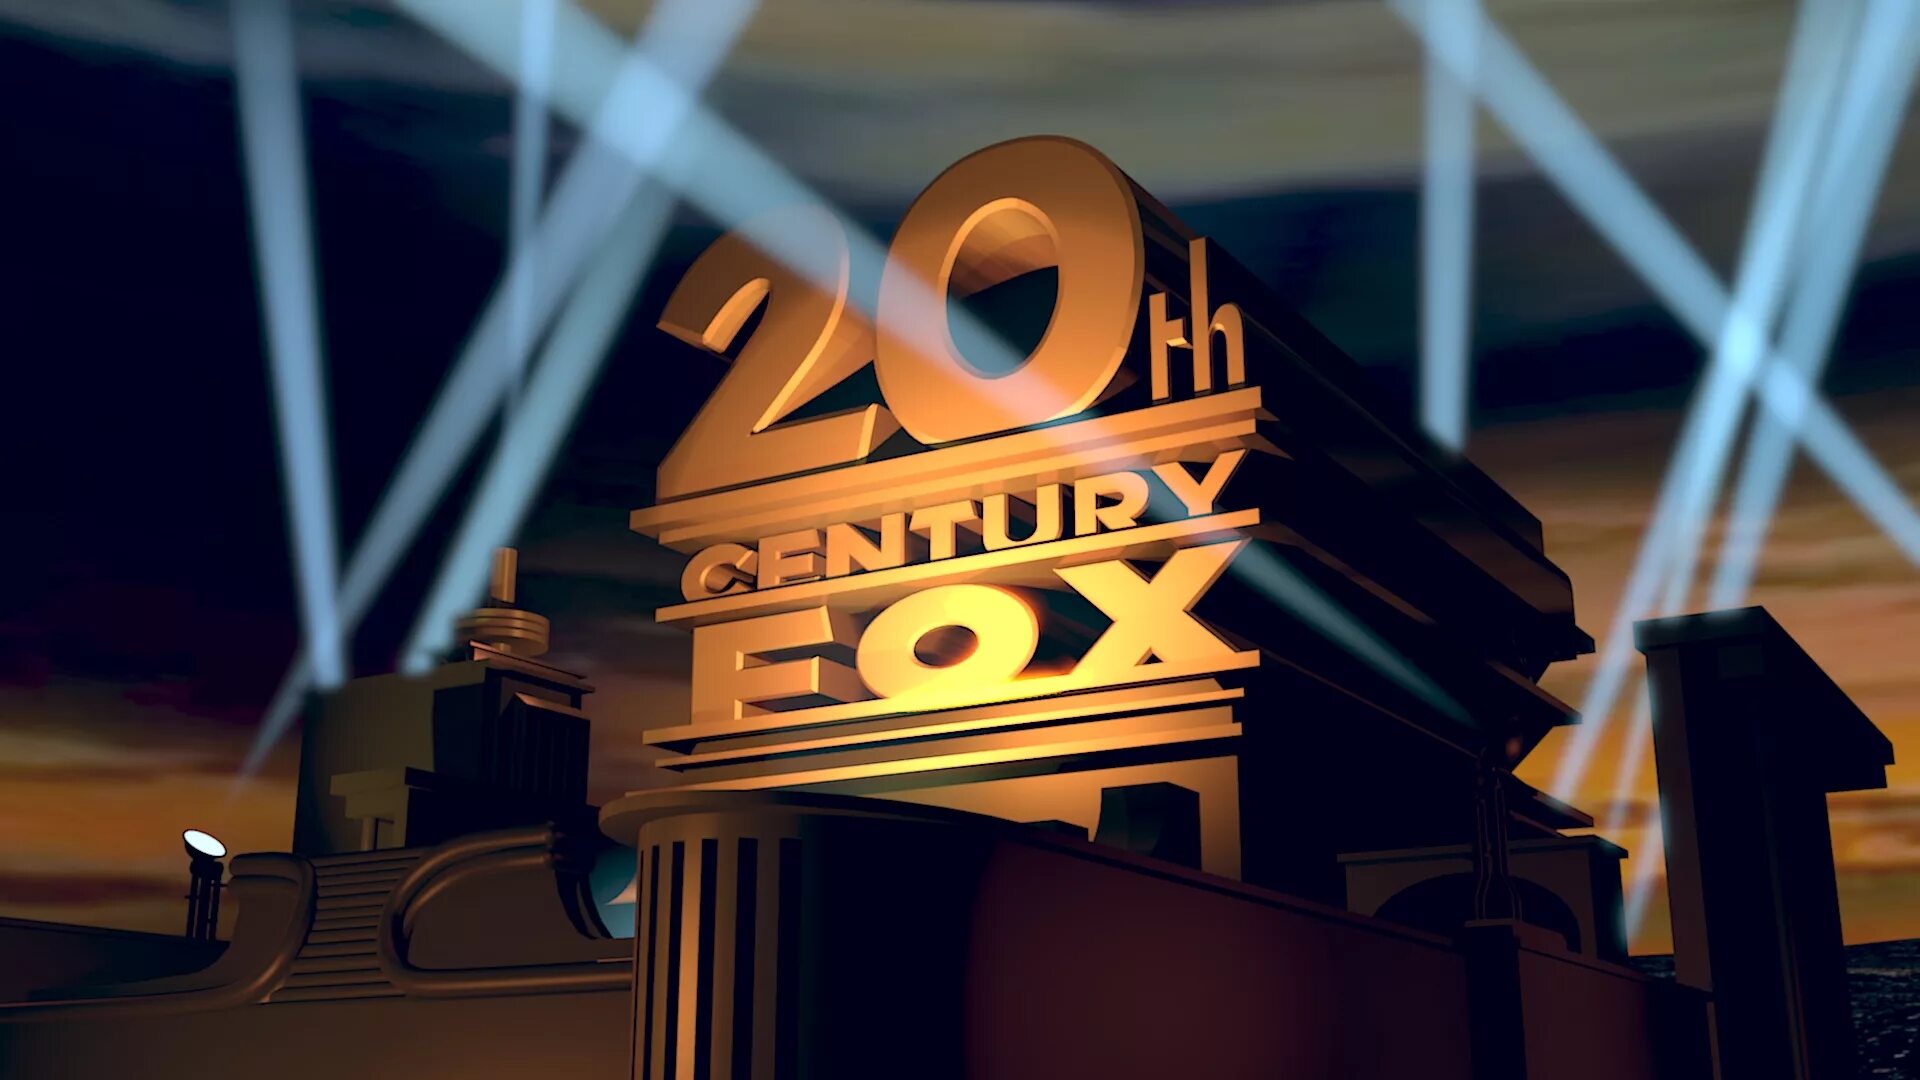 Заставка fox. 20 Век Центури Фокс. 20 Век Фокс Пикчерз. Кинокомпания 20 век Фокс представляет. Студия 20th Century Fox.